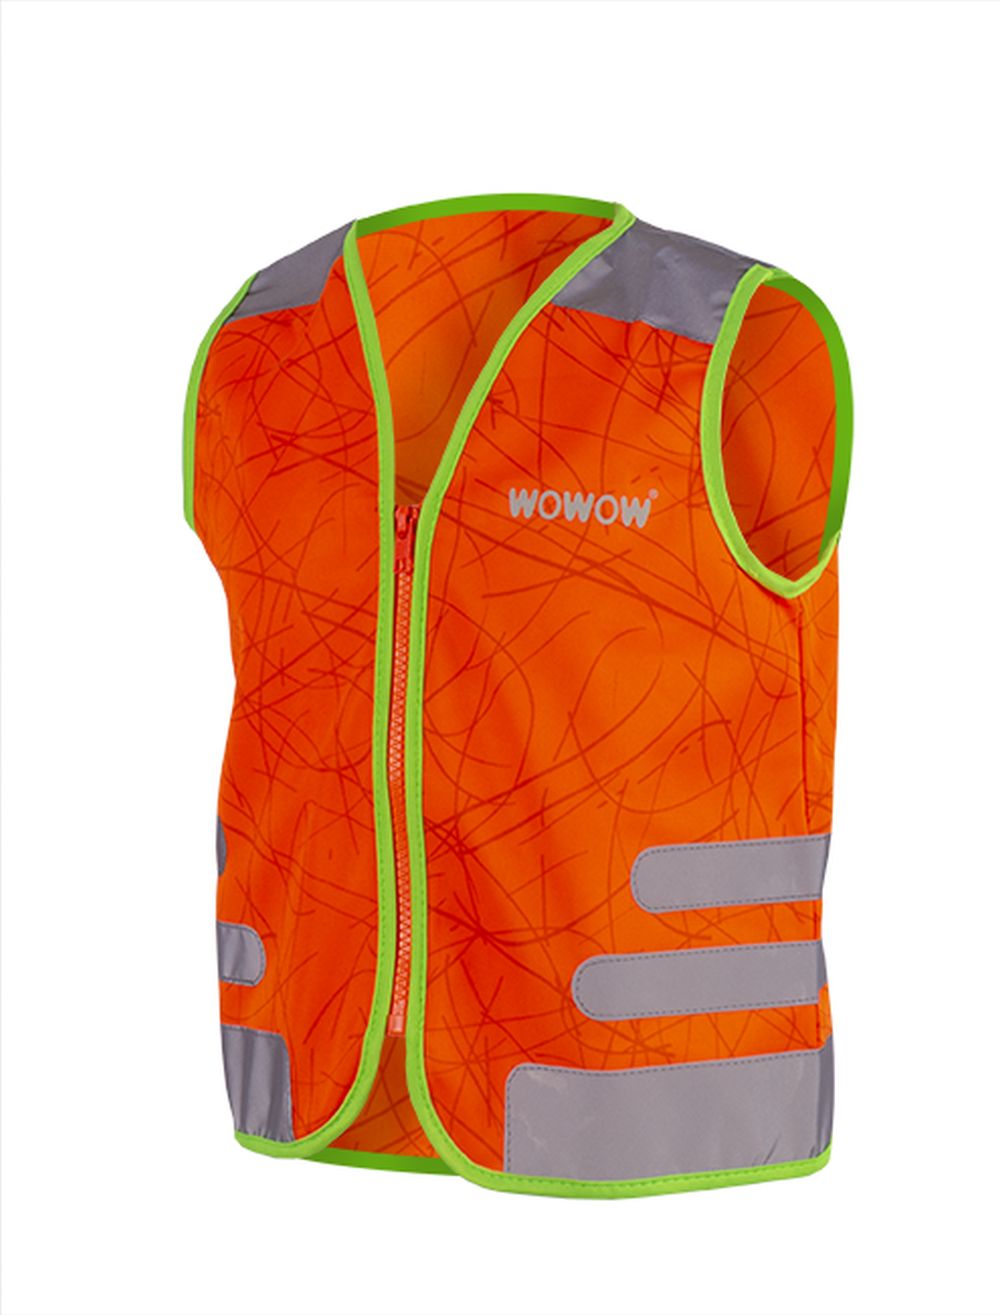 WOWOW Sicherheitsweste Nutty Junior Polyester orange Größe XS online kaufen  | eBay